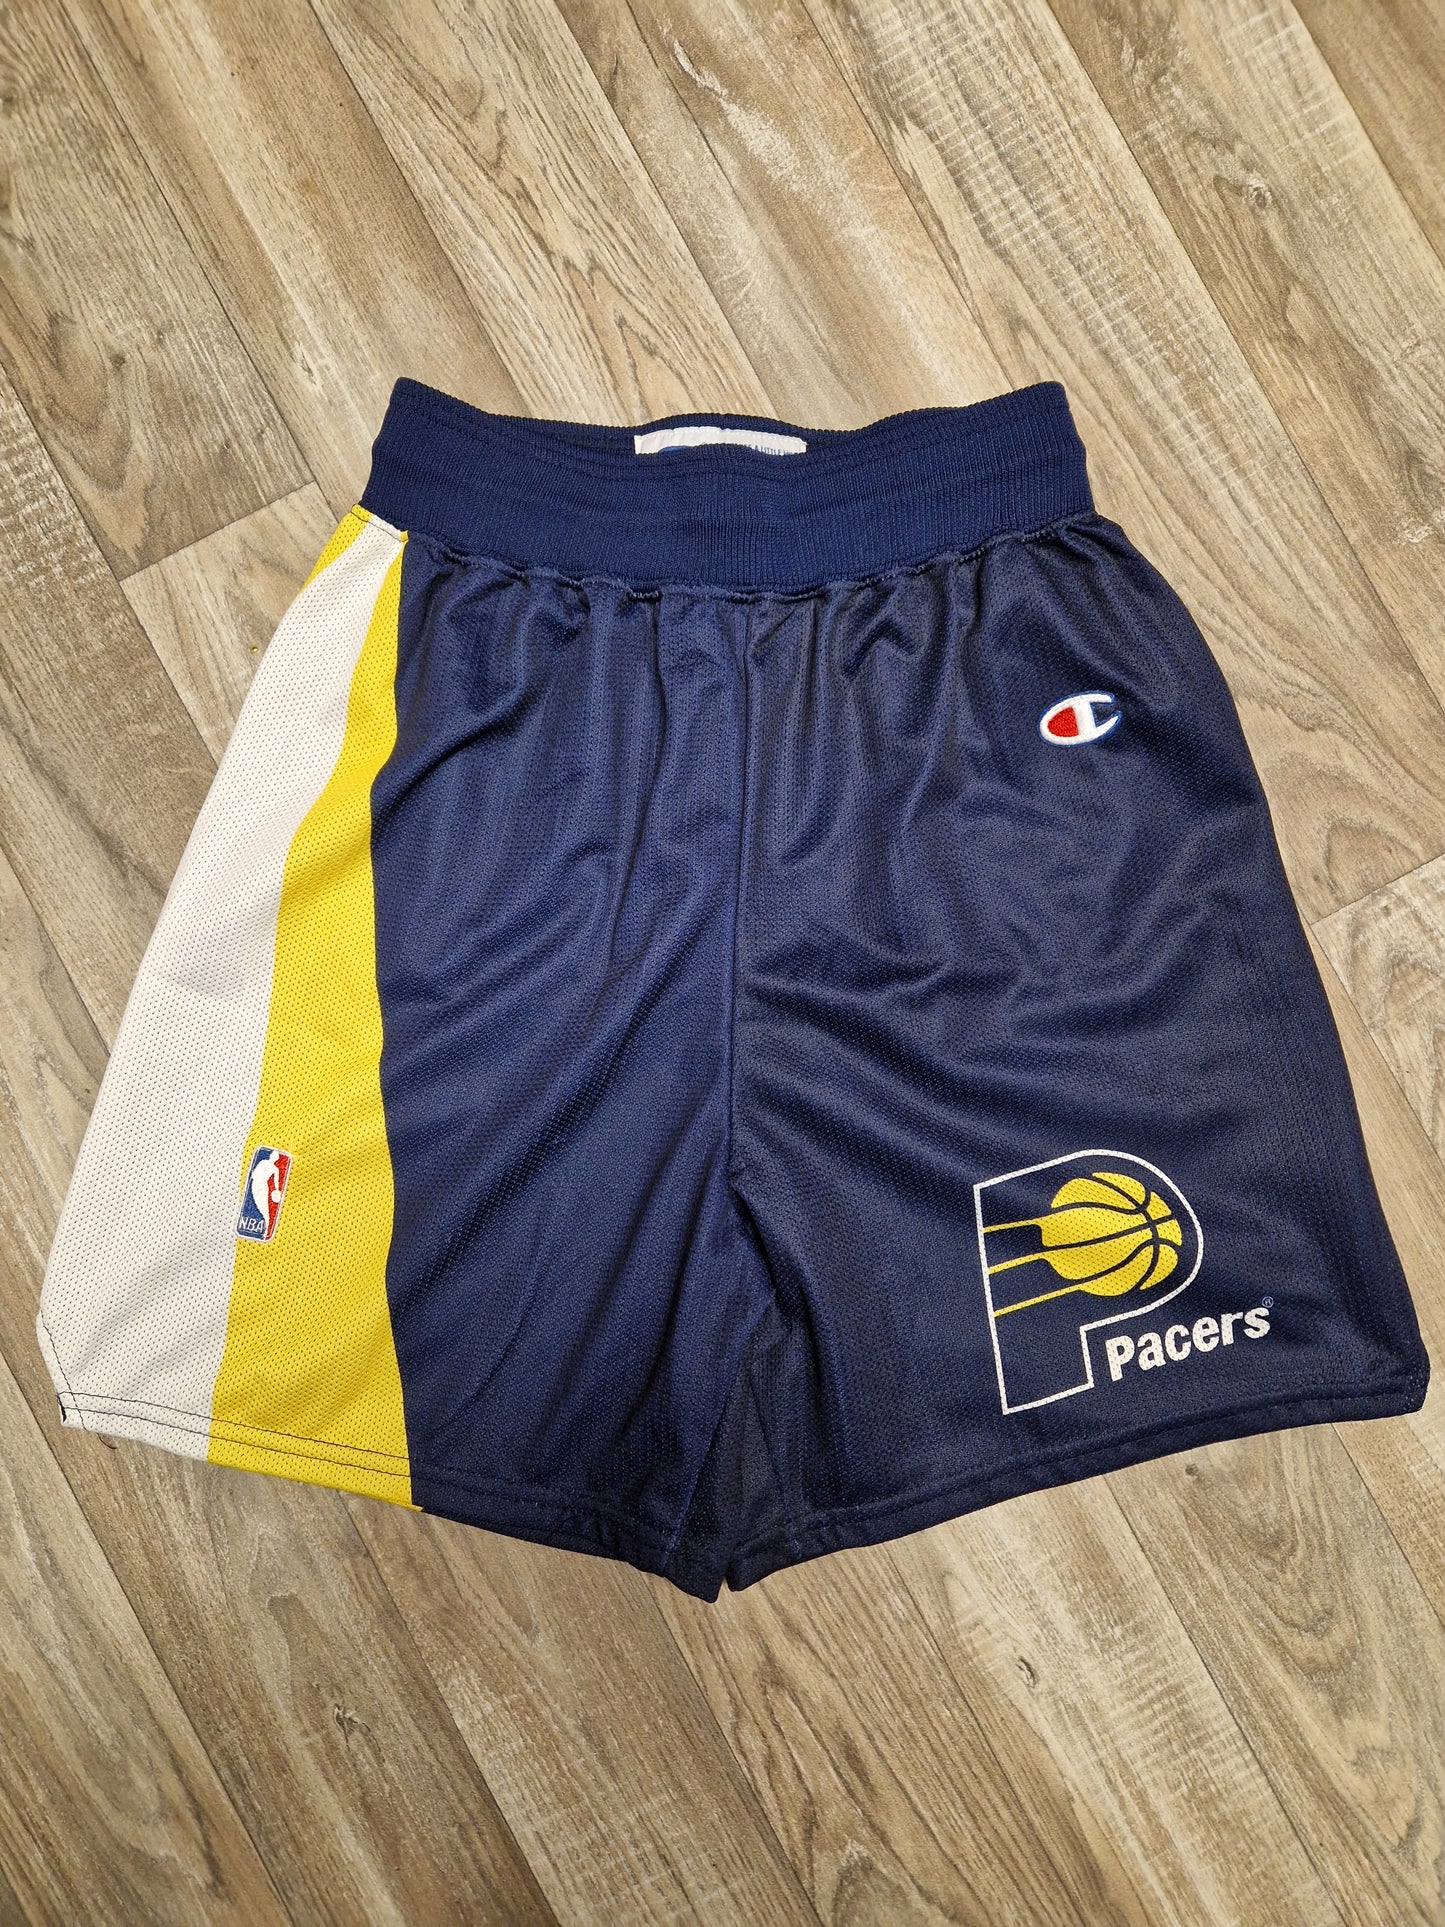 Indiana Pacers Shorts Size Medium